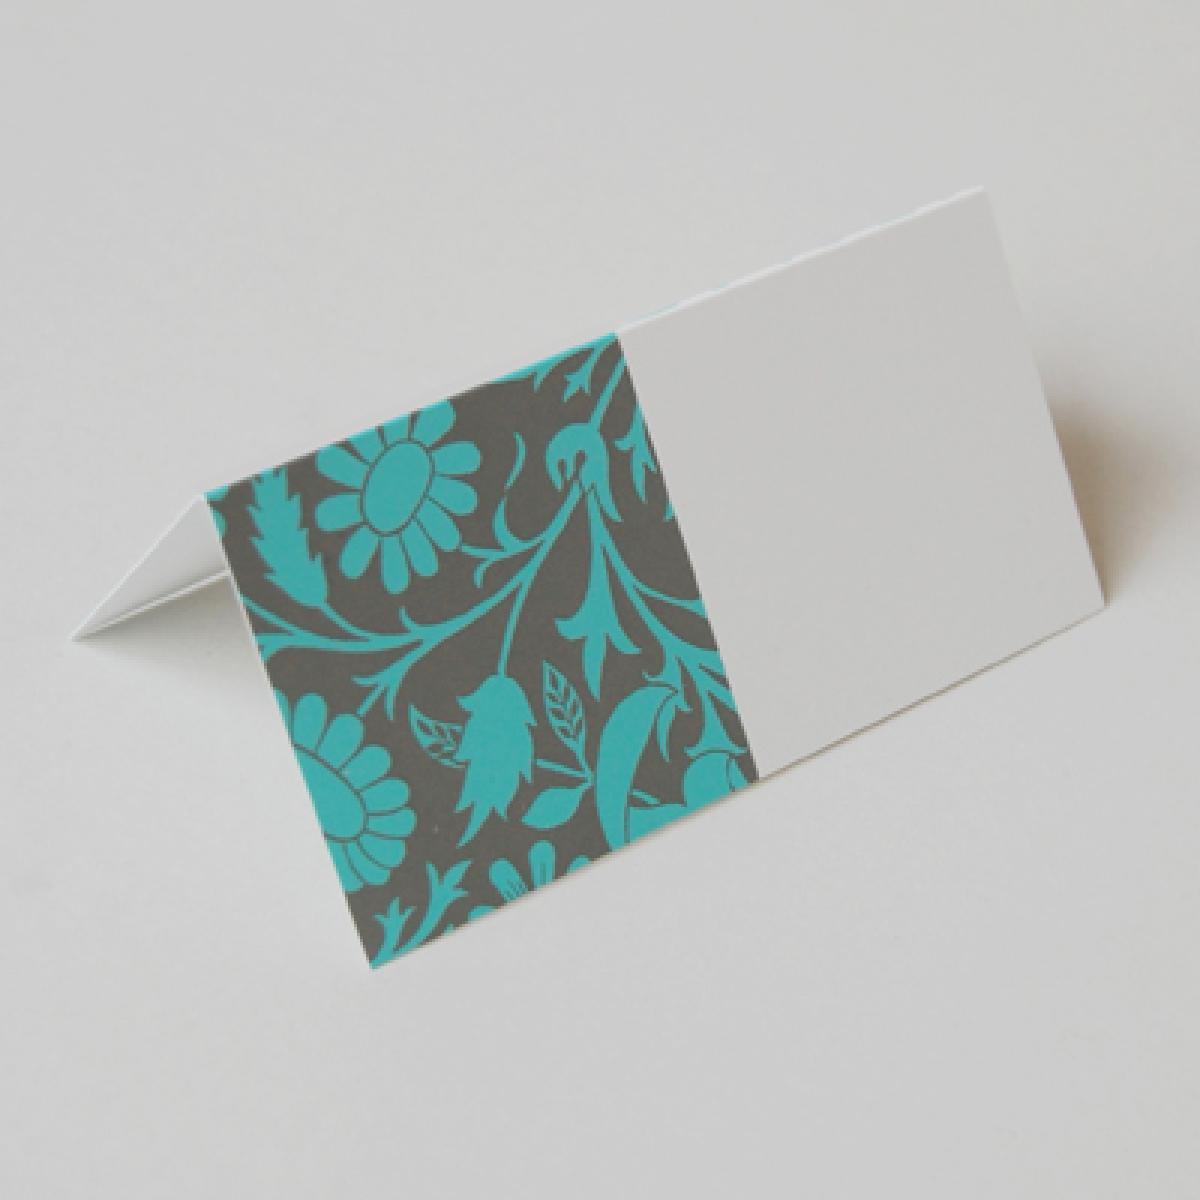 Tischkarte: florale Ornamente  (mint, petrol, grau)